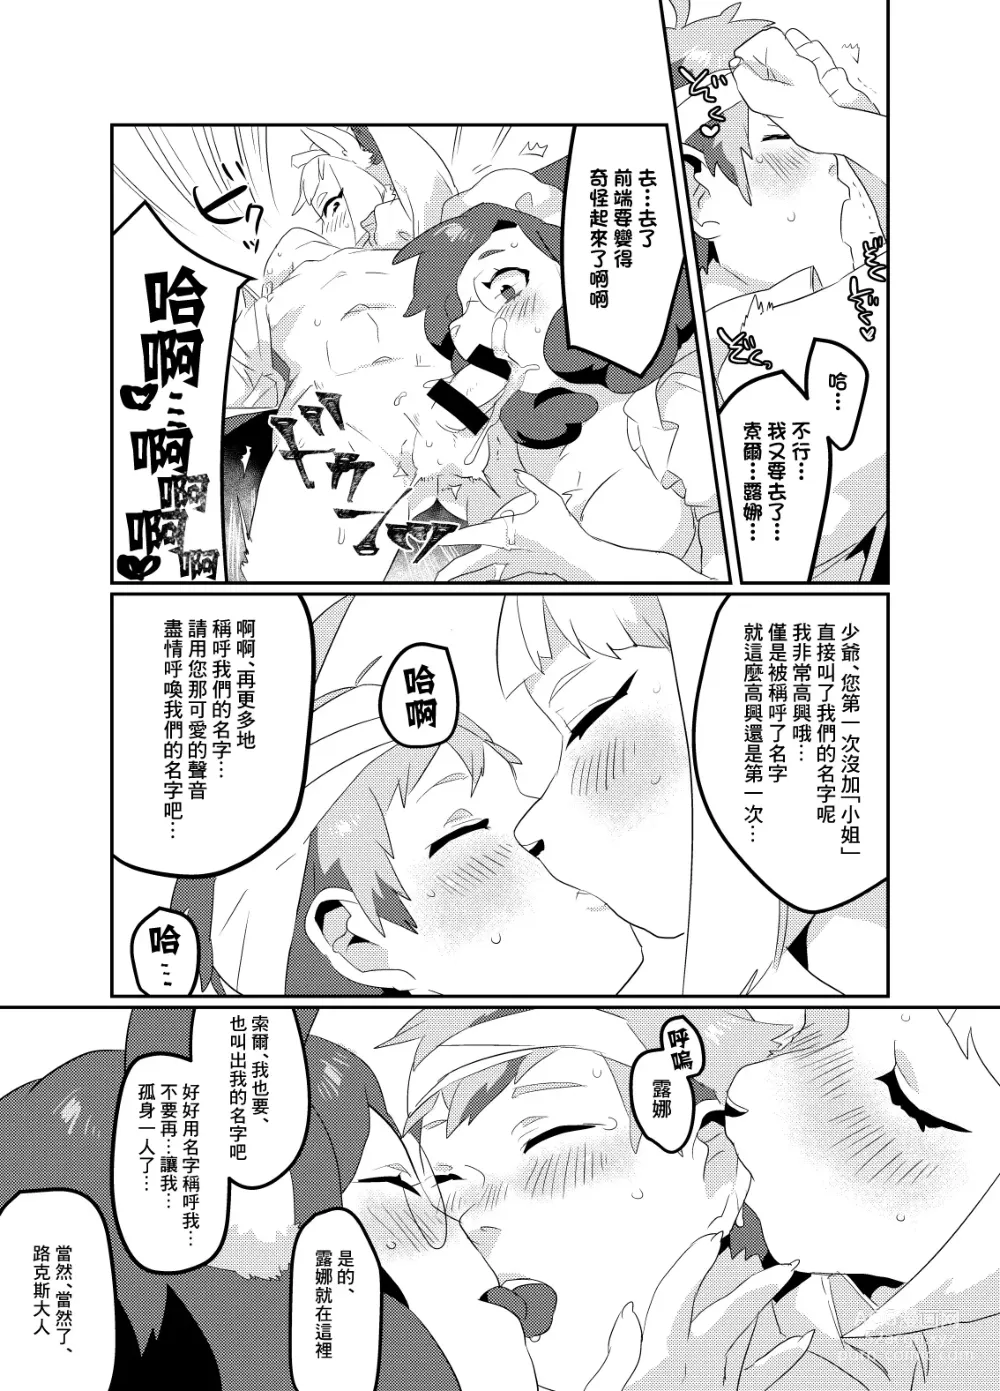 Page 43 of doujinshi Meido inHEAVEN